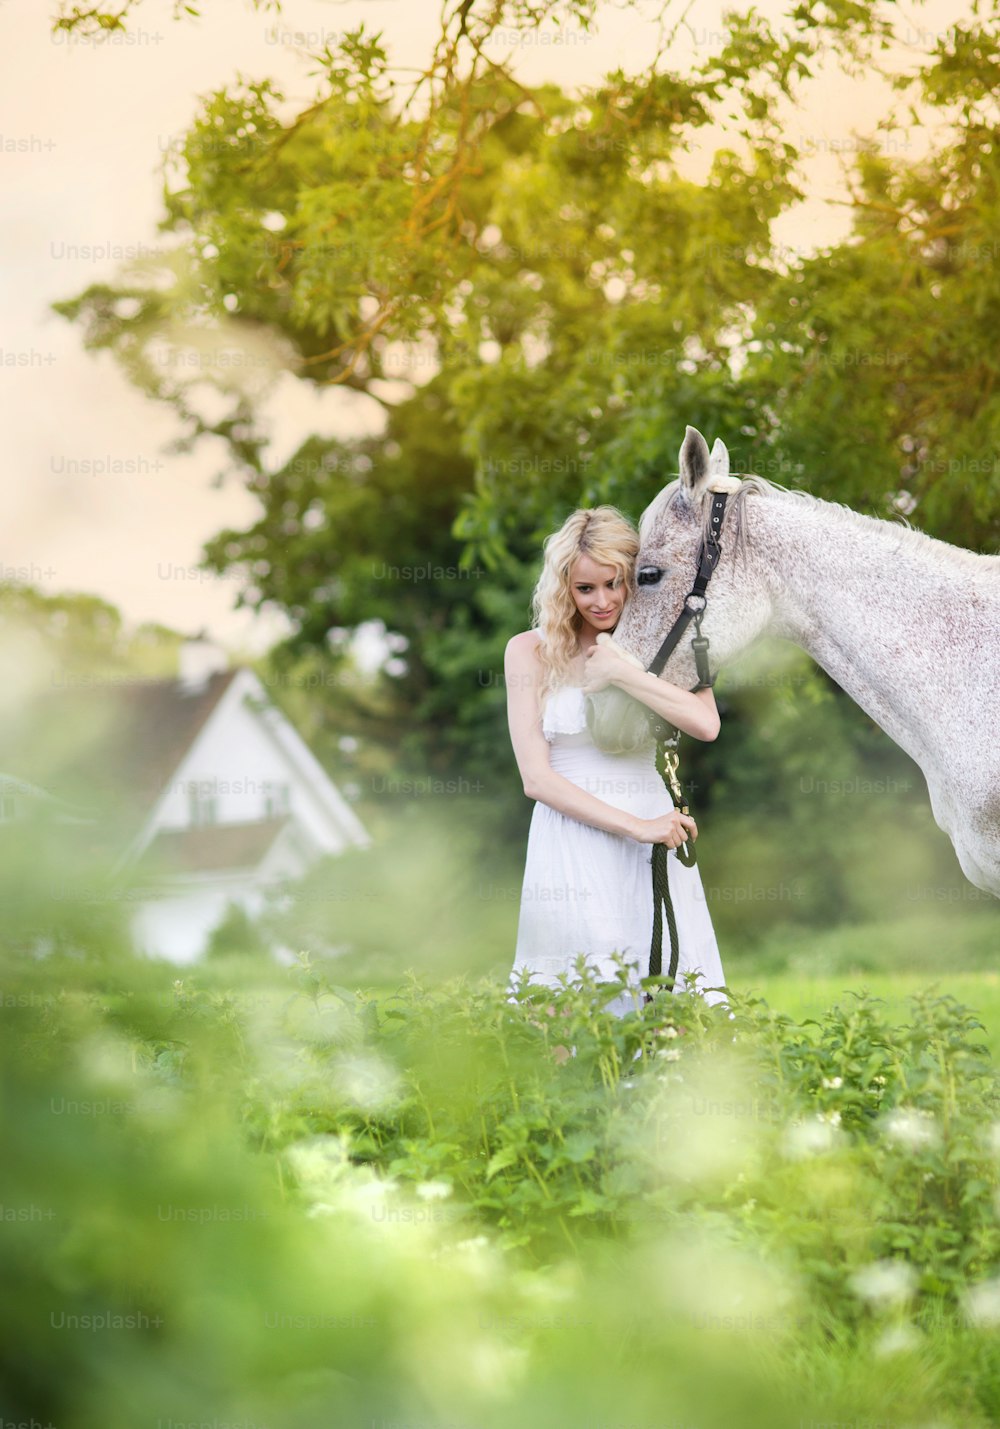 Femme en robe blanche marchant à cheval dans une campagne verdoyante